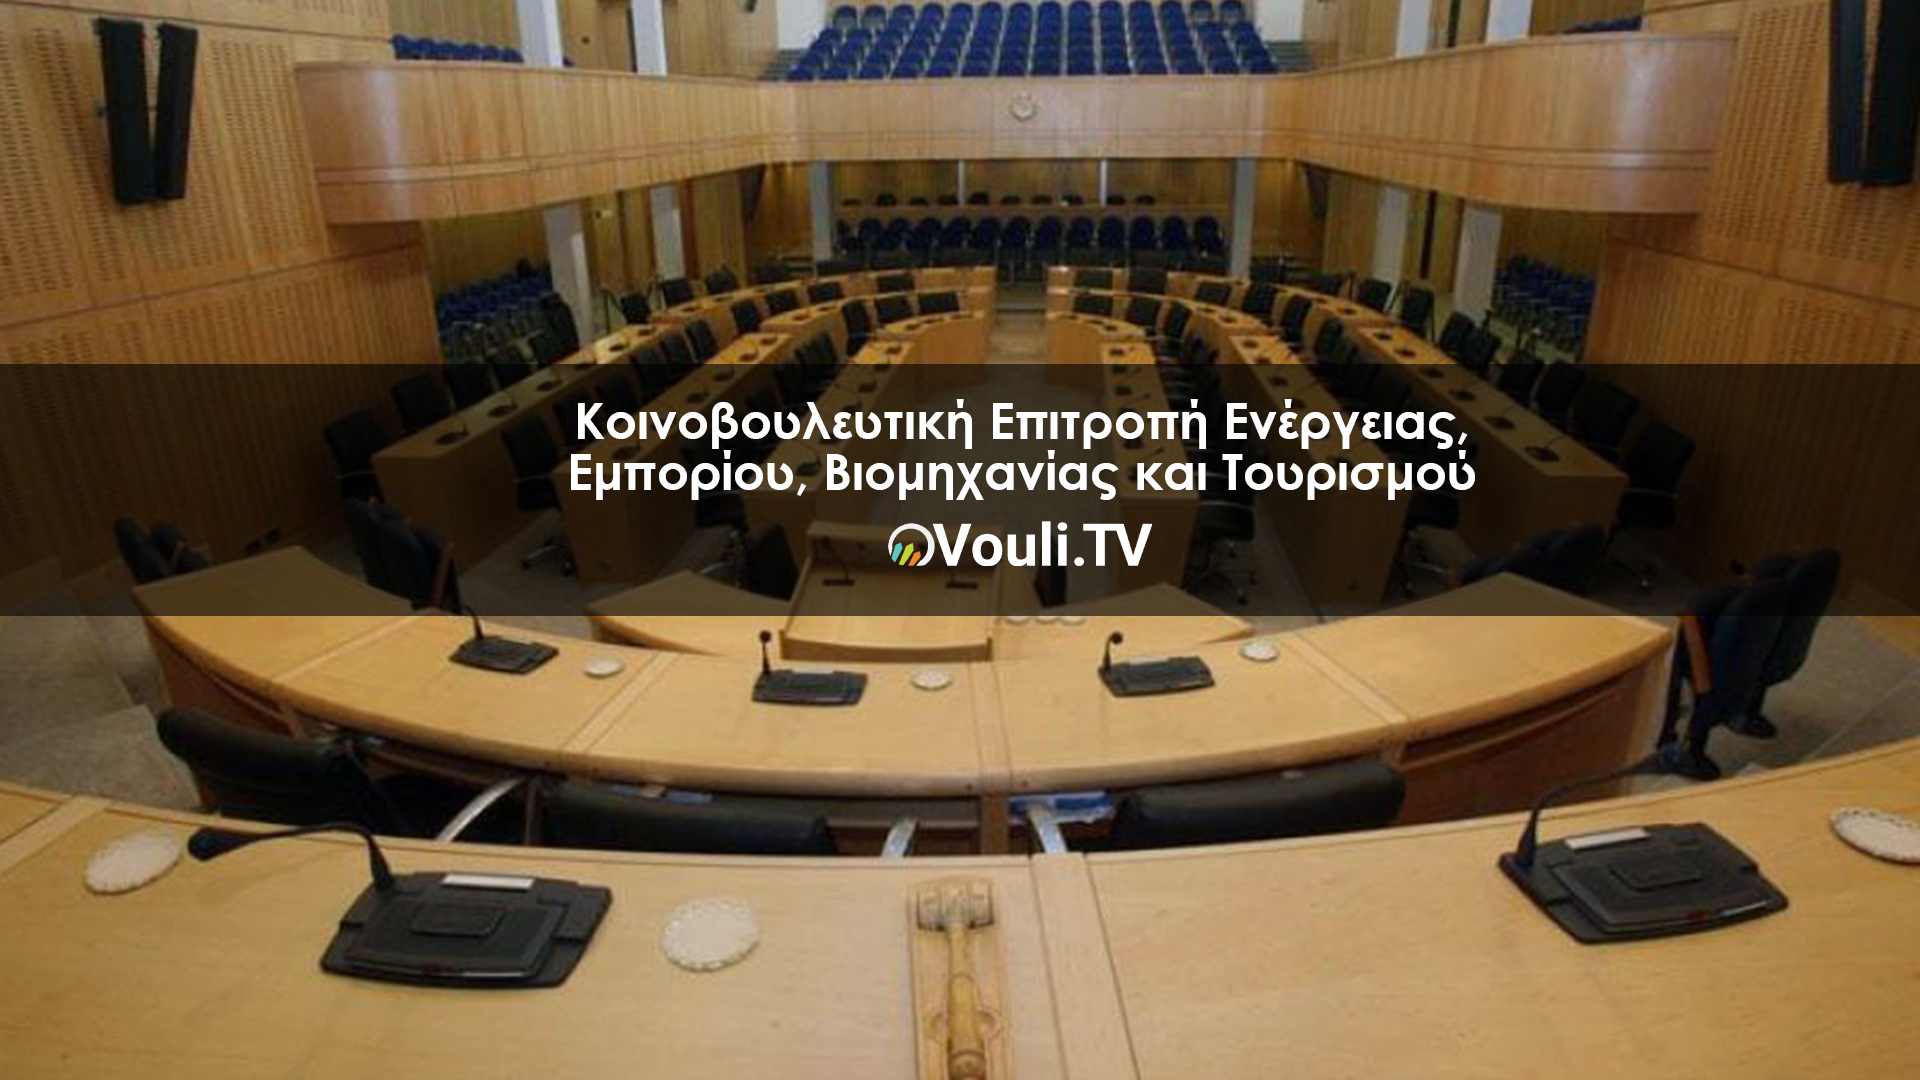 Κοινοβουλευτική Επιτροπή Εργασίας, Πρόνοιας και Κοινωνικών Ασφαλίσεων | Vouli report 12/04/2022